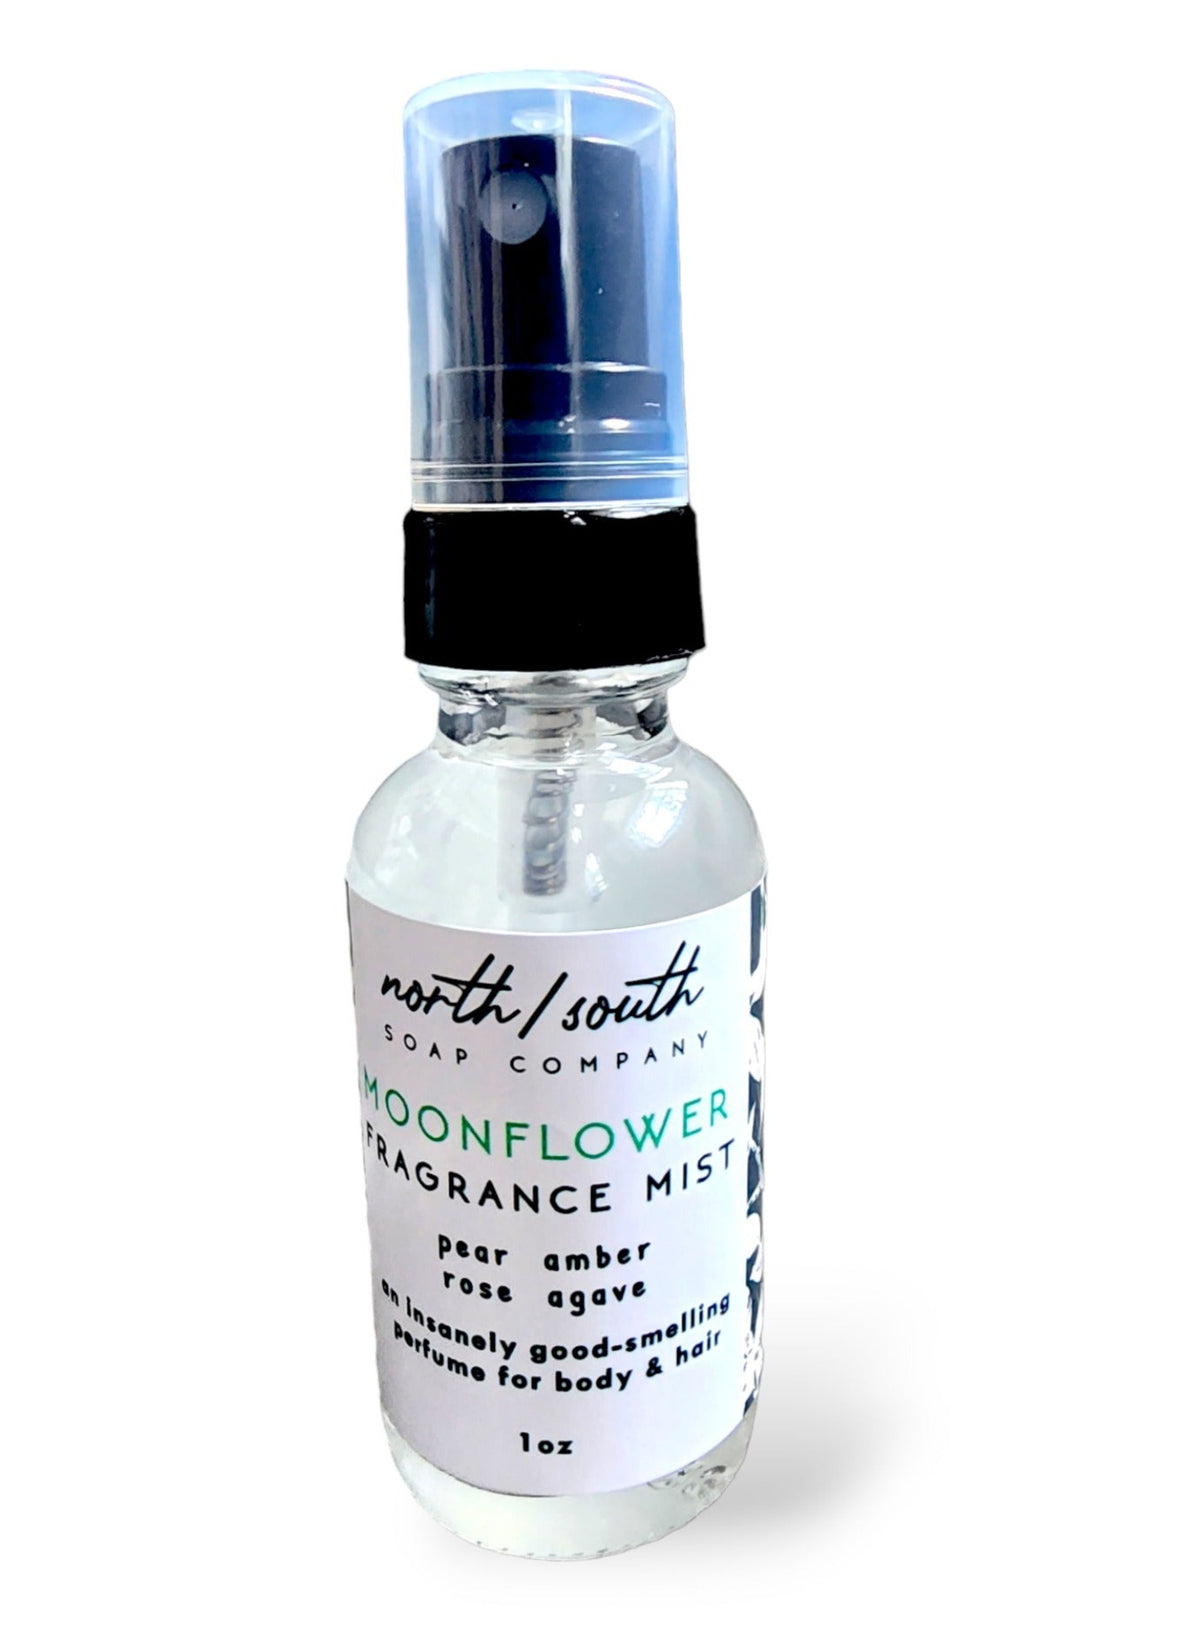 Moonflower Fragrance Mist